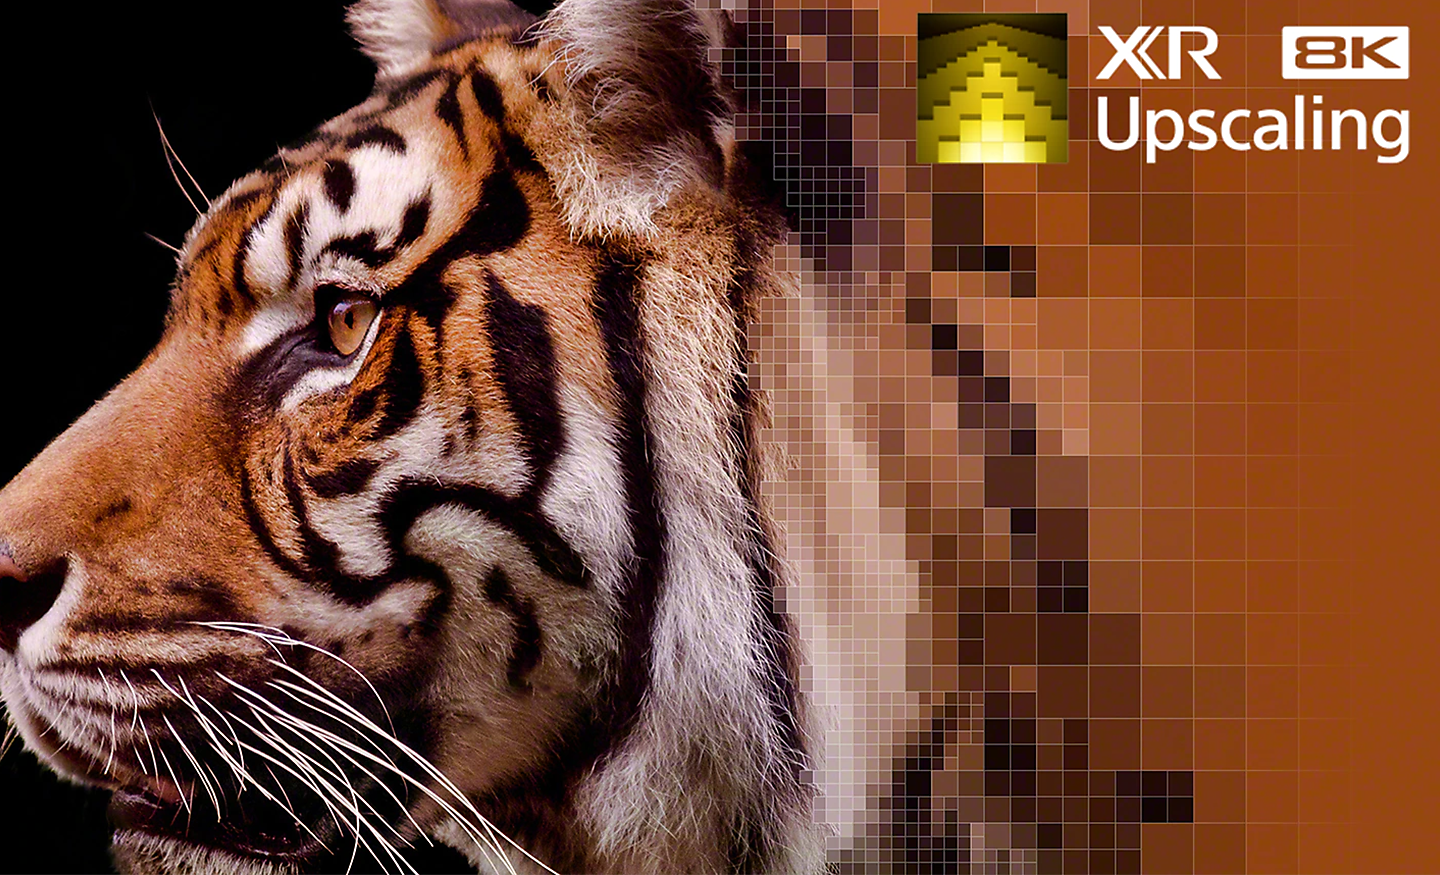 Bližnji posnetek vzorca na kožuhu tigra, ki prikazuje učinek povečanja ločljivosti XR 8K